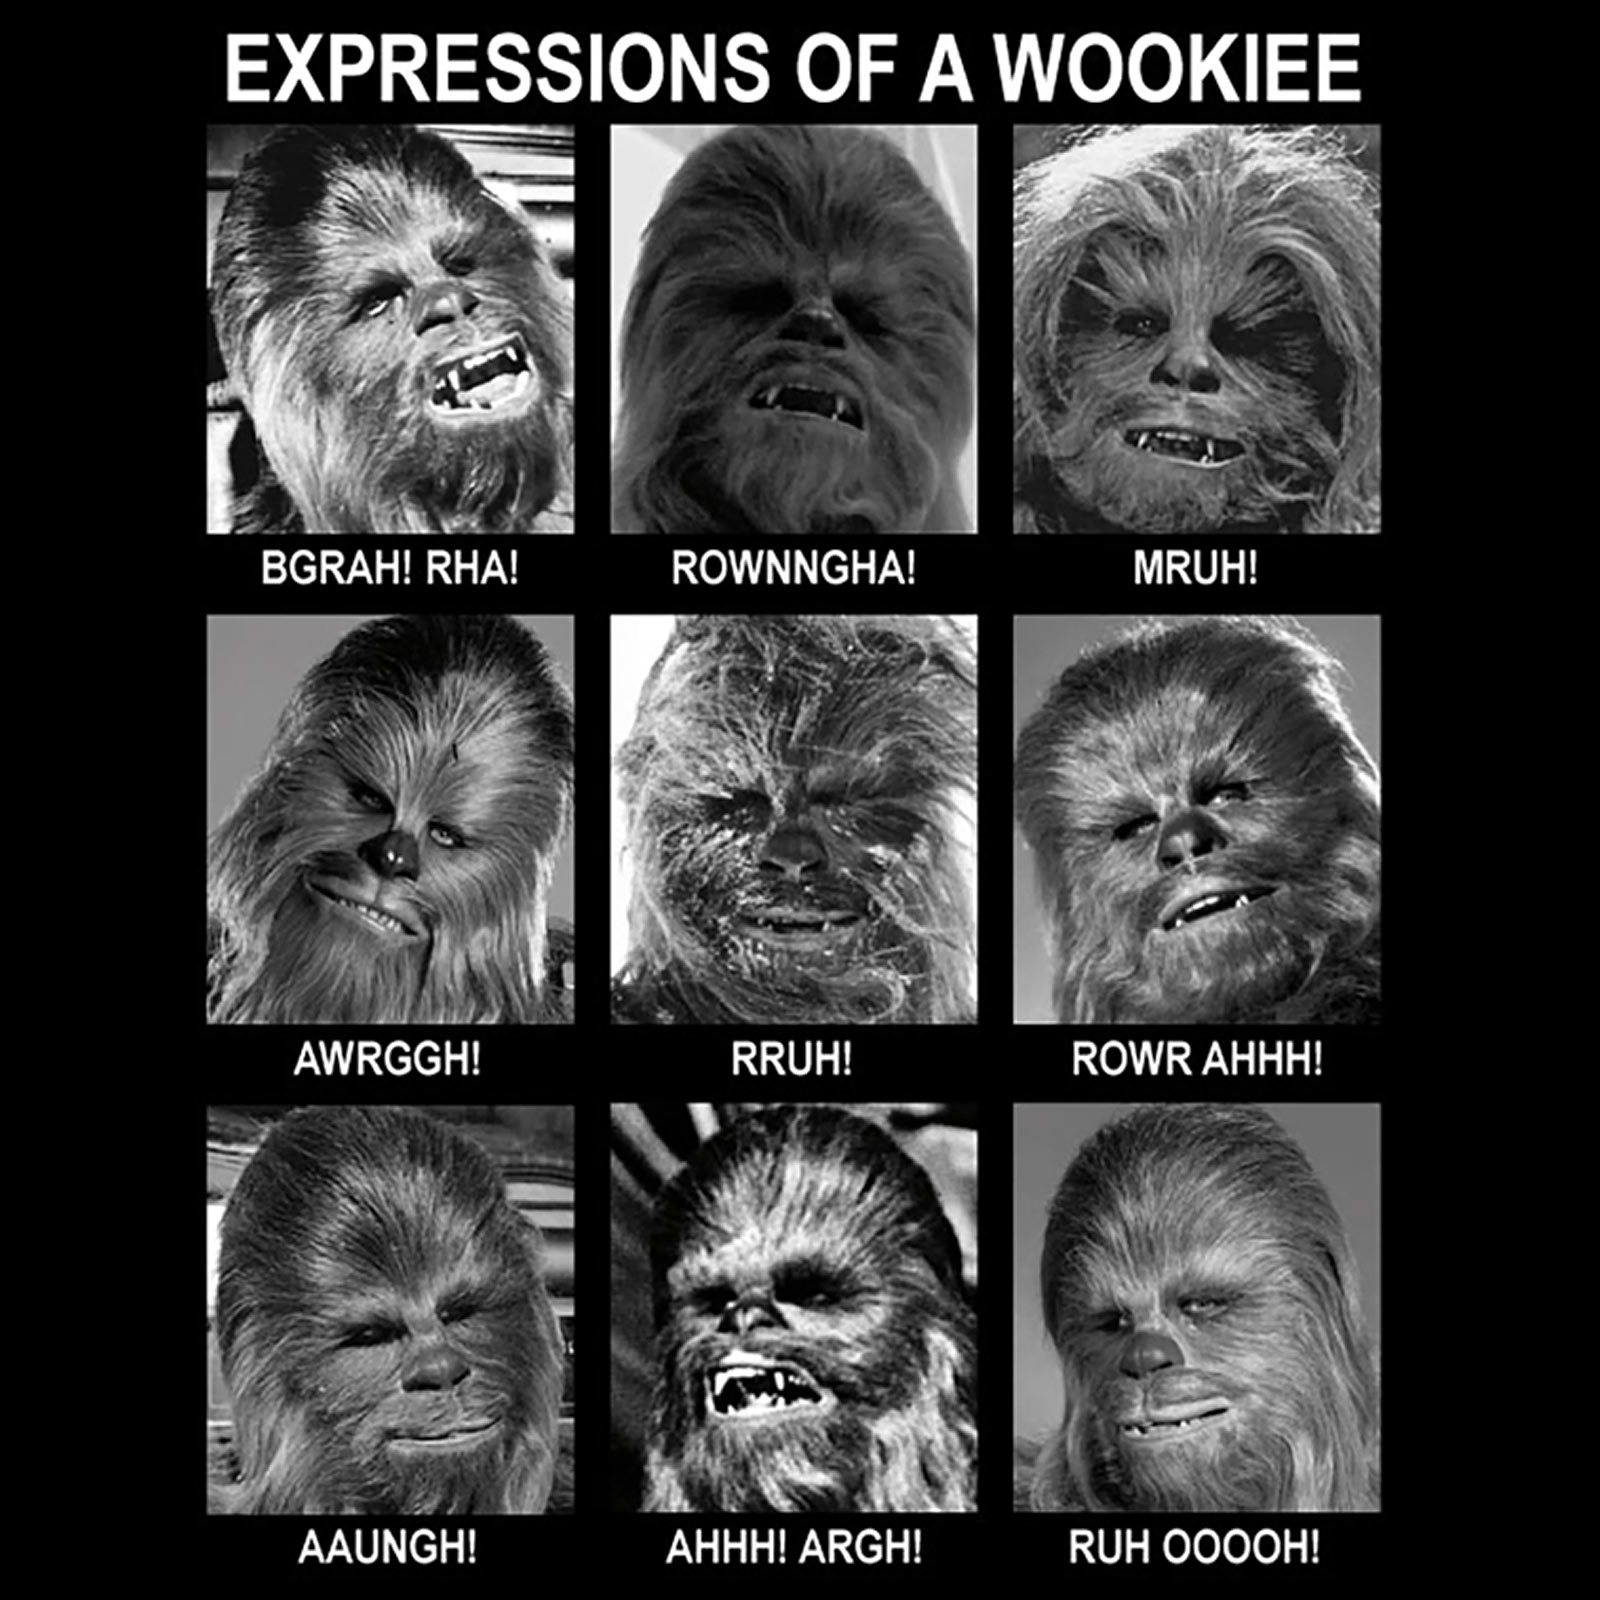 Star Wars - Wookiee Expressions T-Shirt black